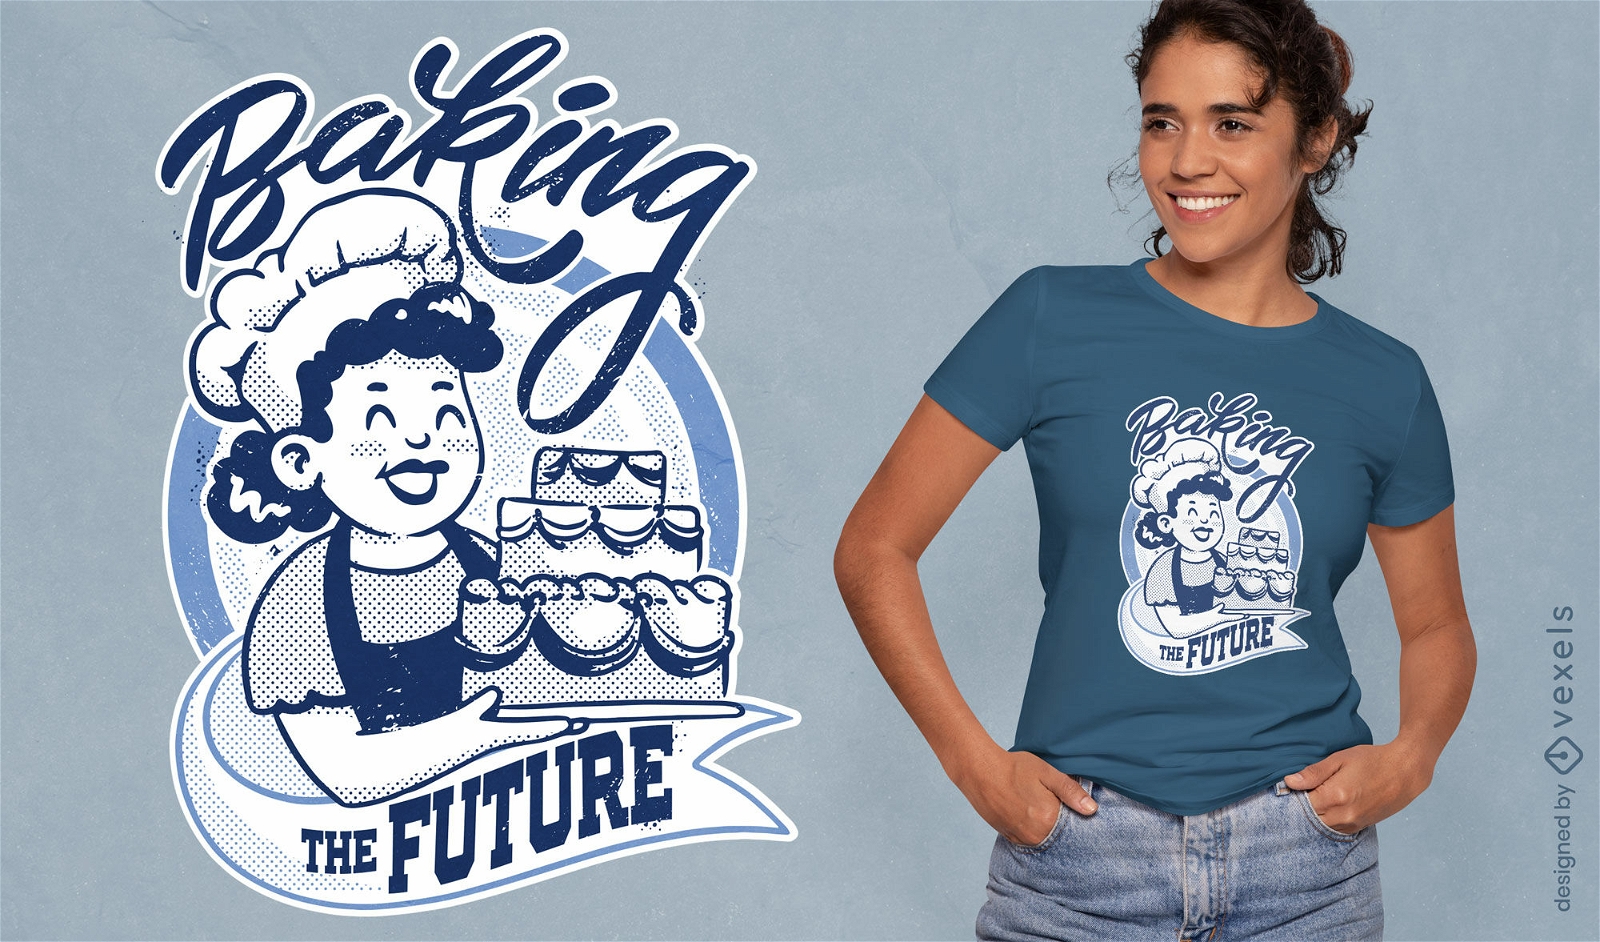 Backen des zukünftigen Retro-Cartoon-Zitat-T-Shirt-Designs